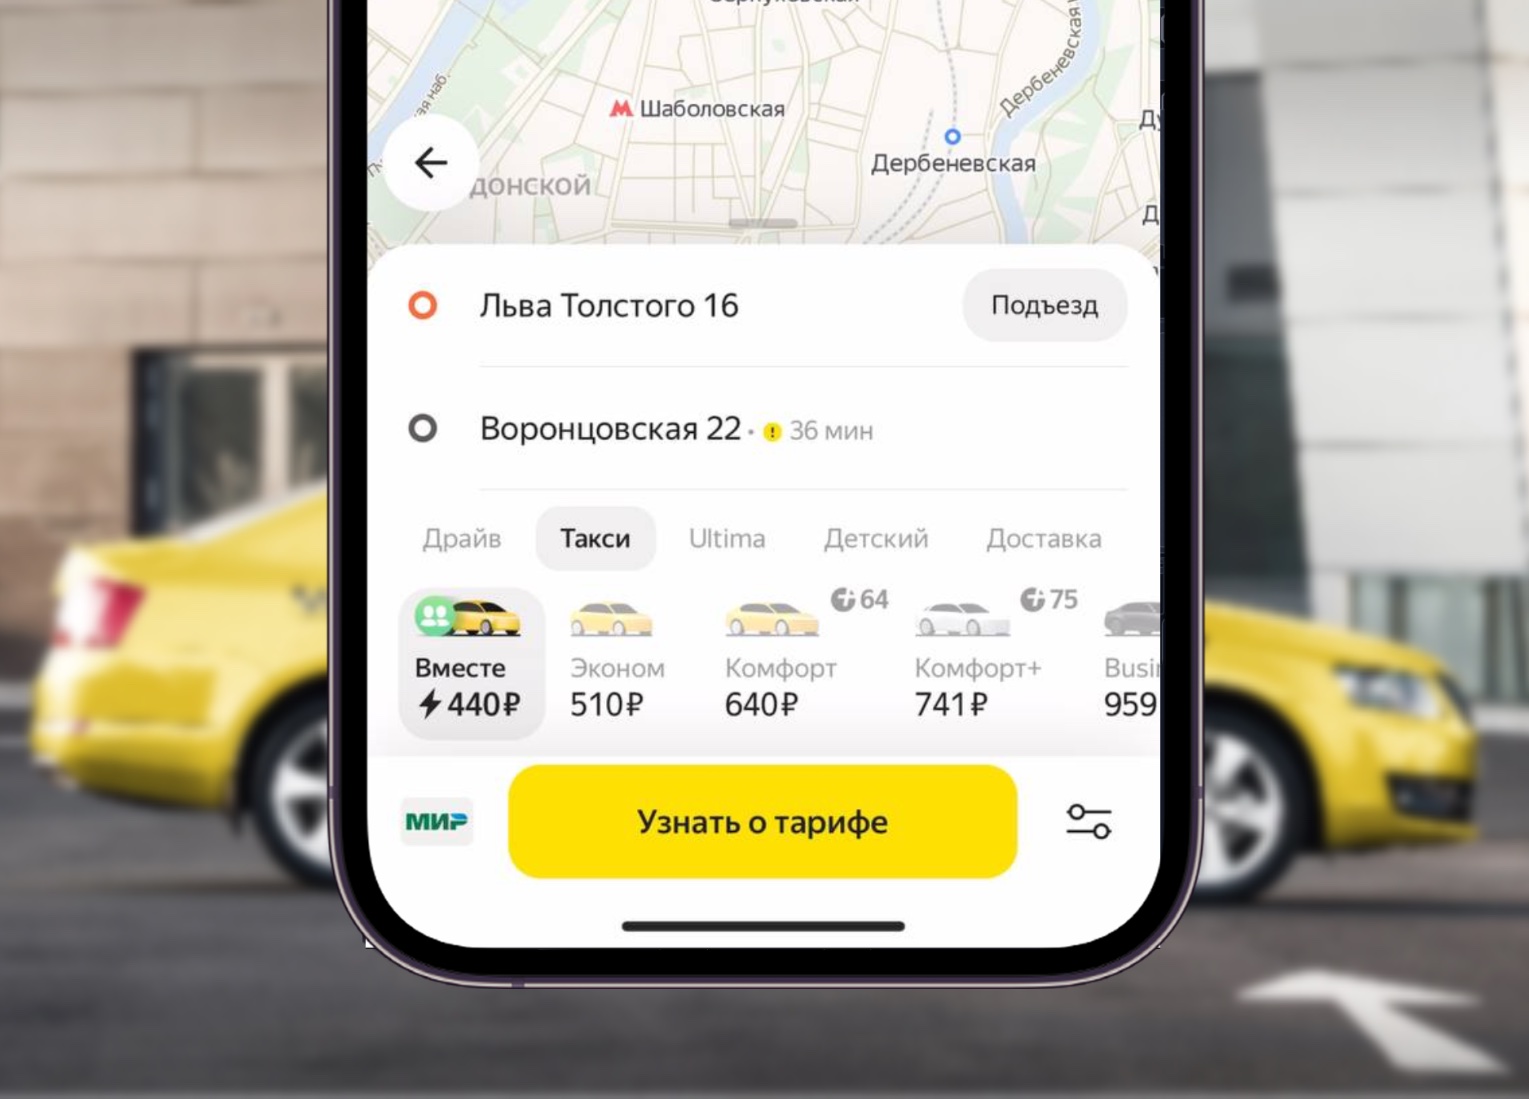 Яндекс Go запустил совместные поездки в такси в Москве и Петербурге